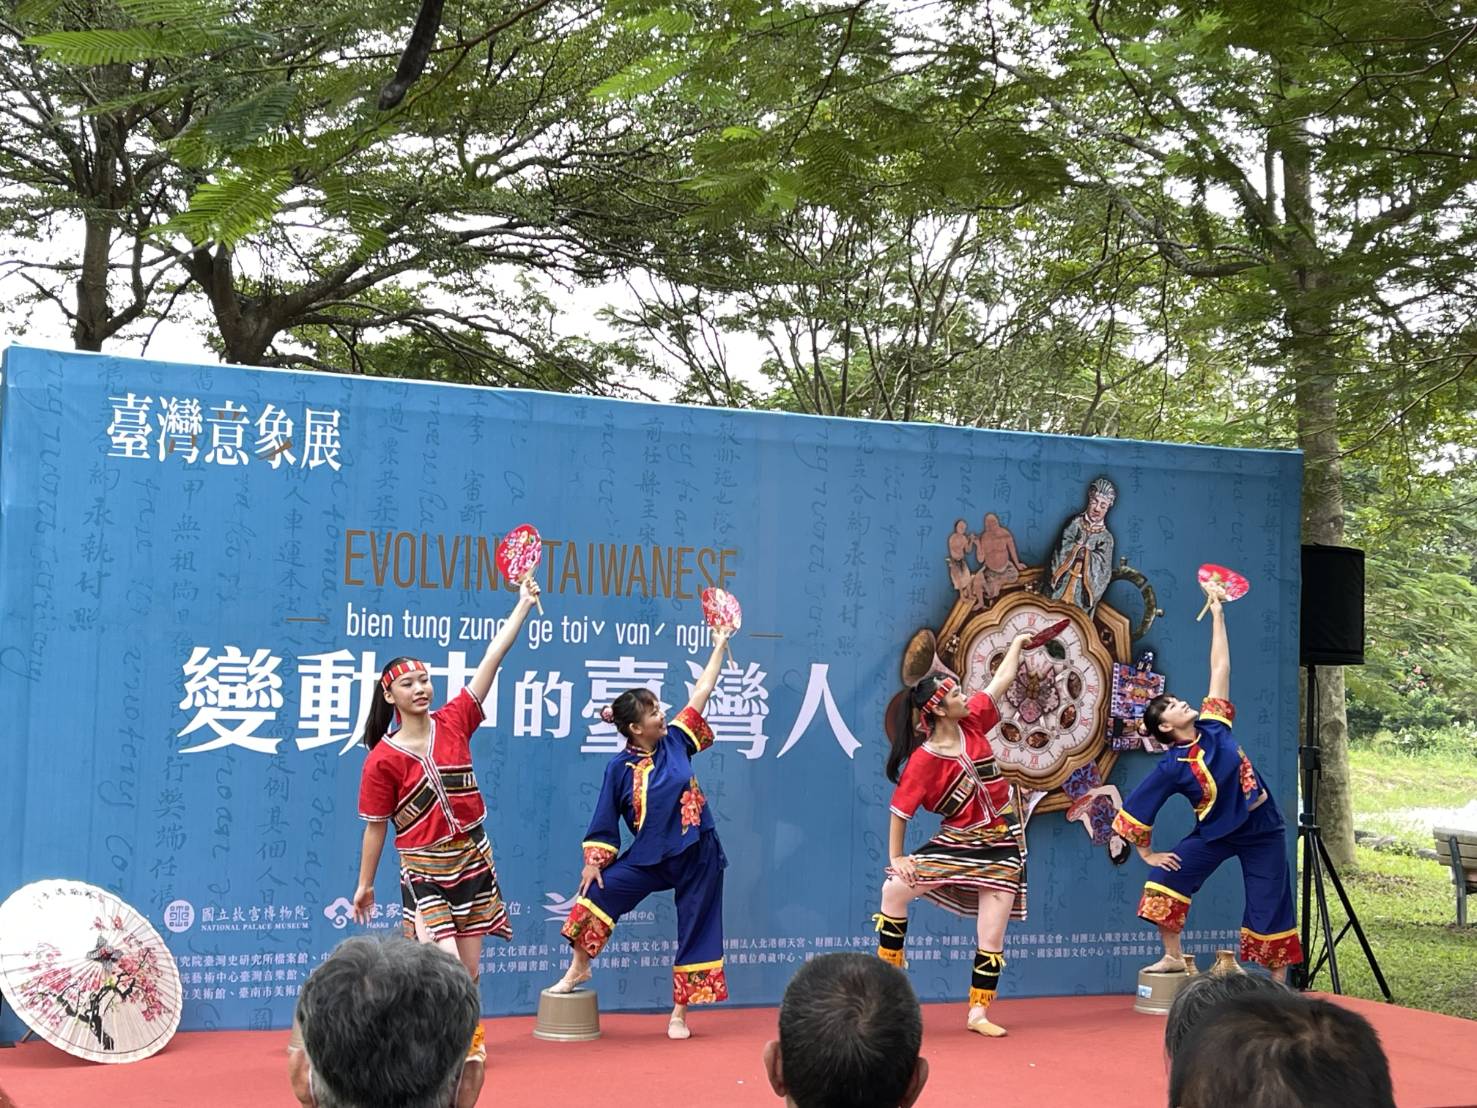 「臺灣意象-變動中的臺灣人」數位展-開展舞蹈表演，以山狗大樂團創作的樂曲，展現客家與原住民融合影